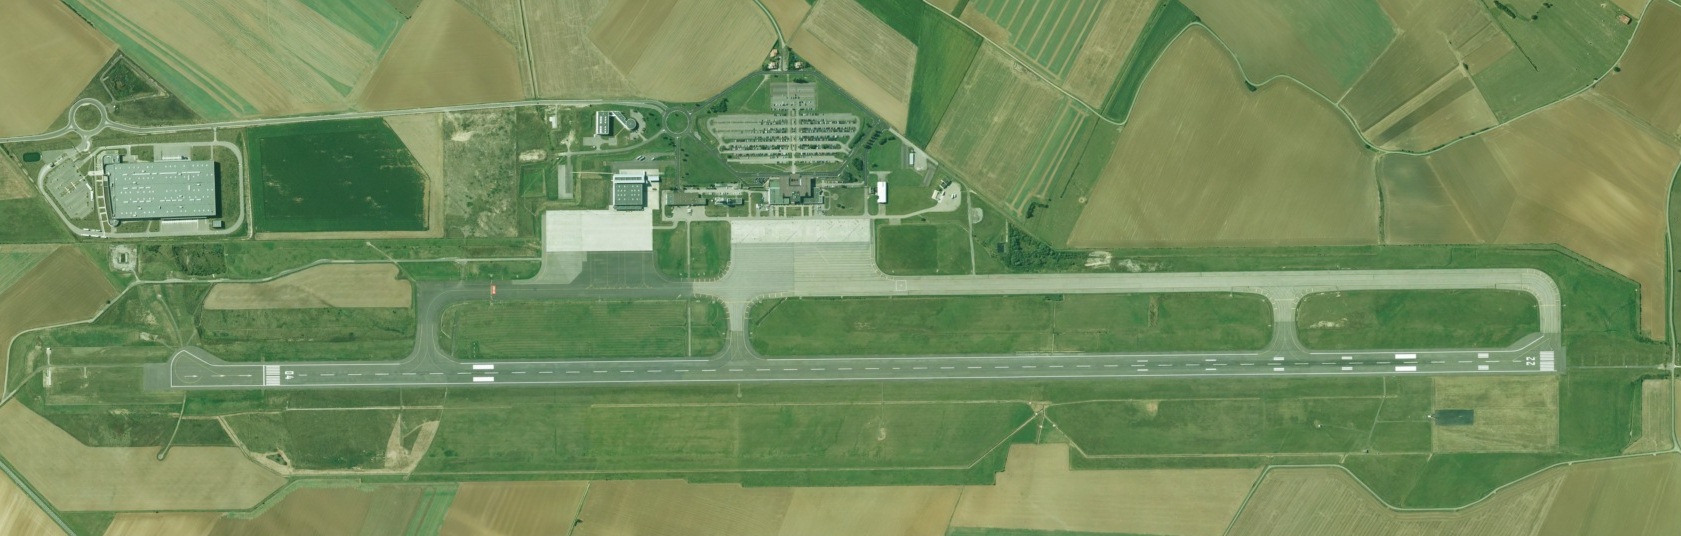 Lorraine Airport - Vue aérienne